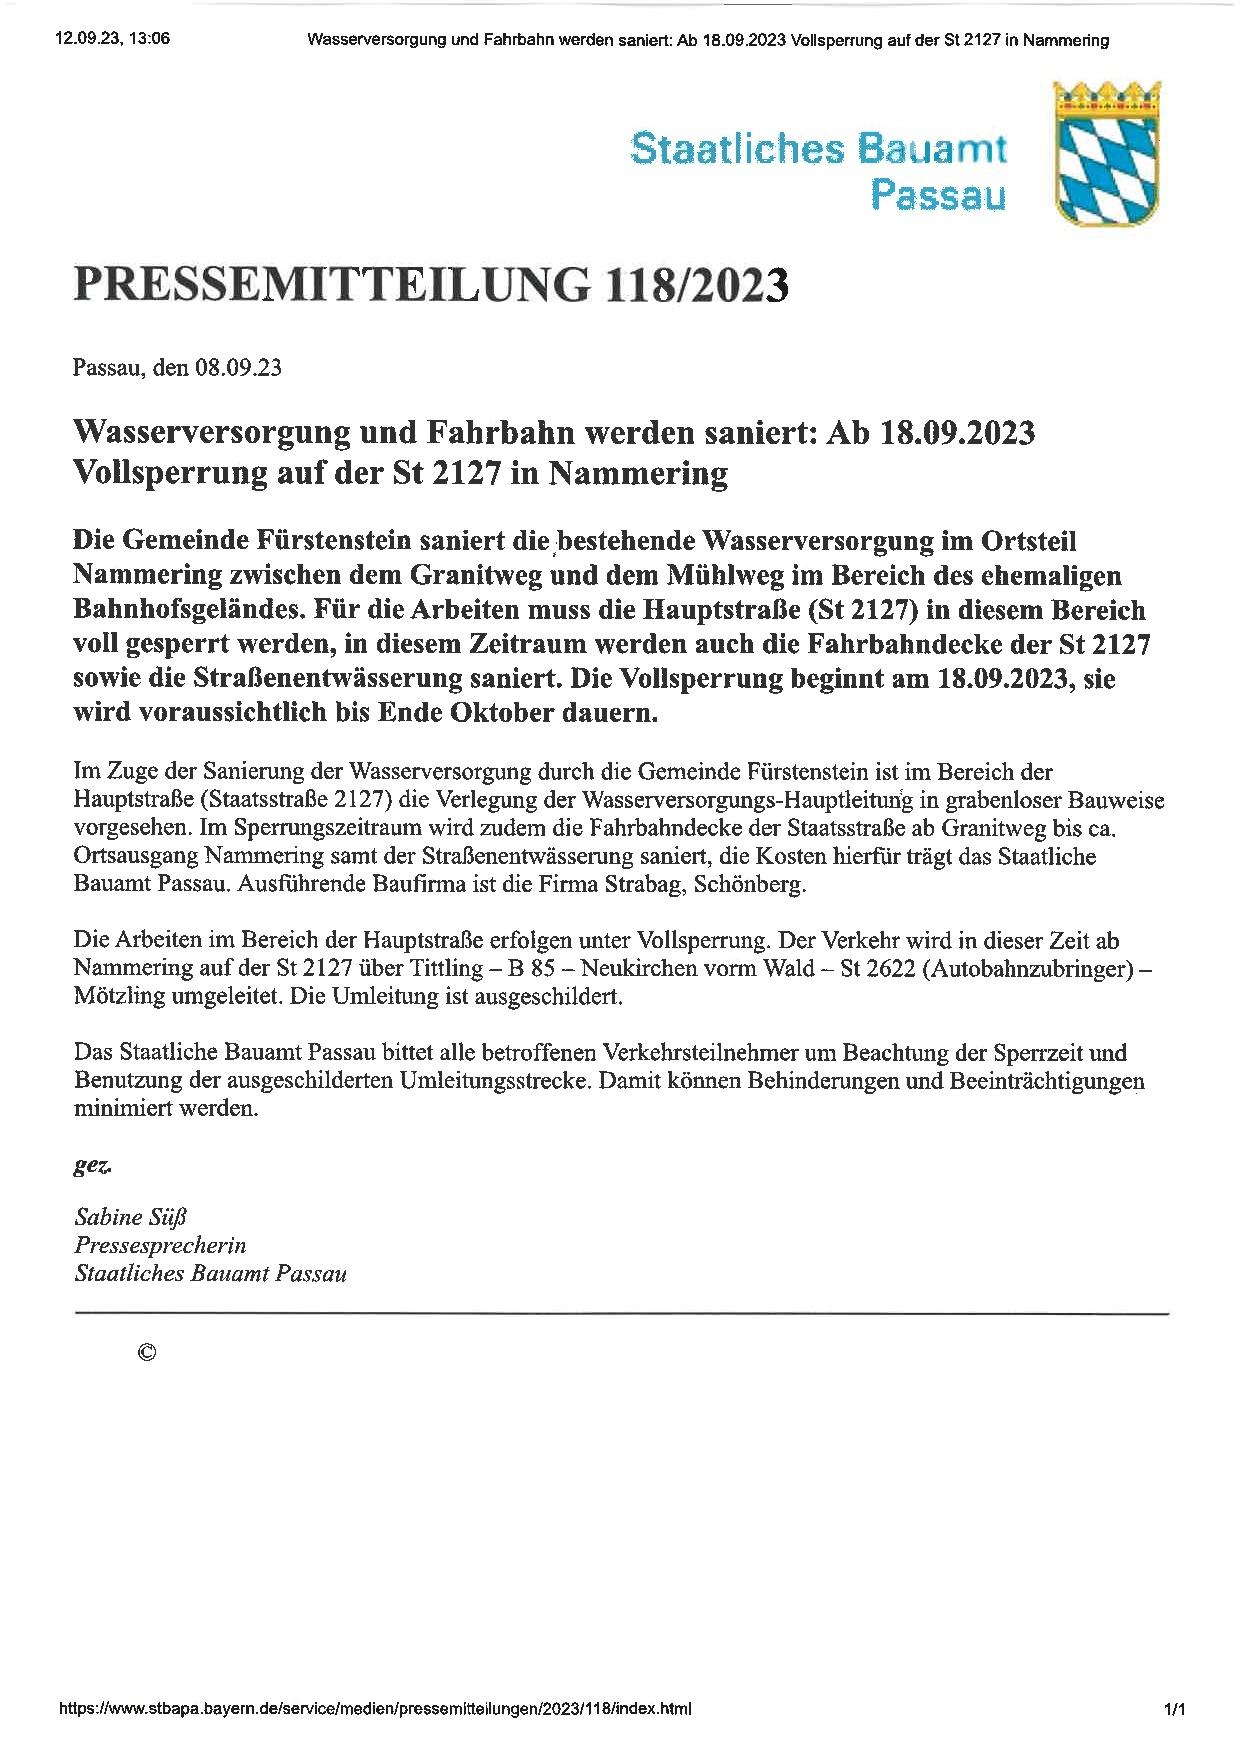 Pressemitteilung_Vollsperrung auf der St 2127 in Nammering